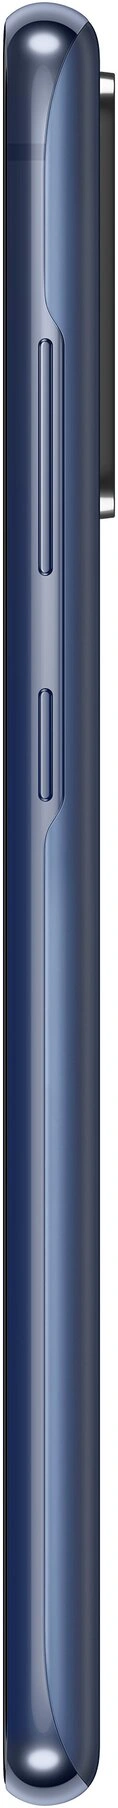 Samsung Galaxy S20 FE (G780) 6/128 GB, Navy Blue